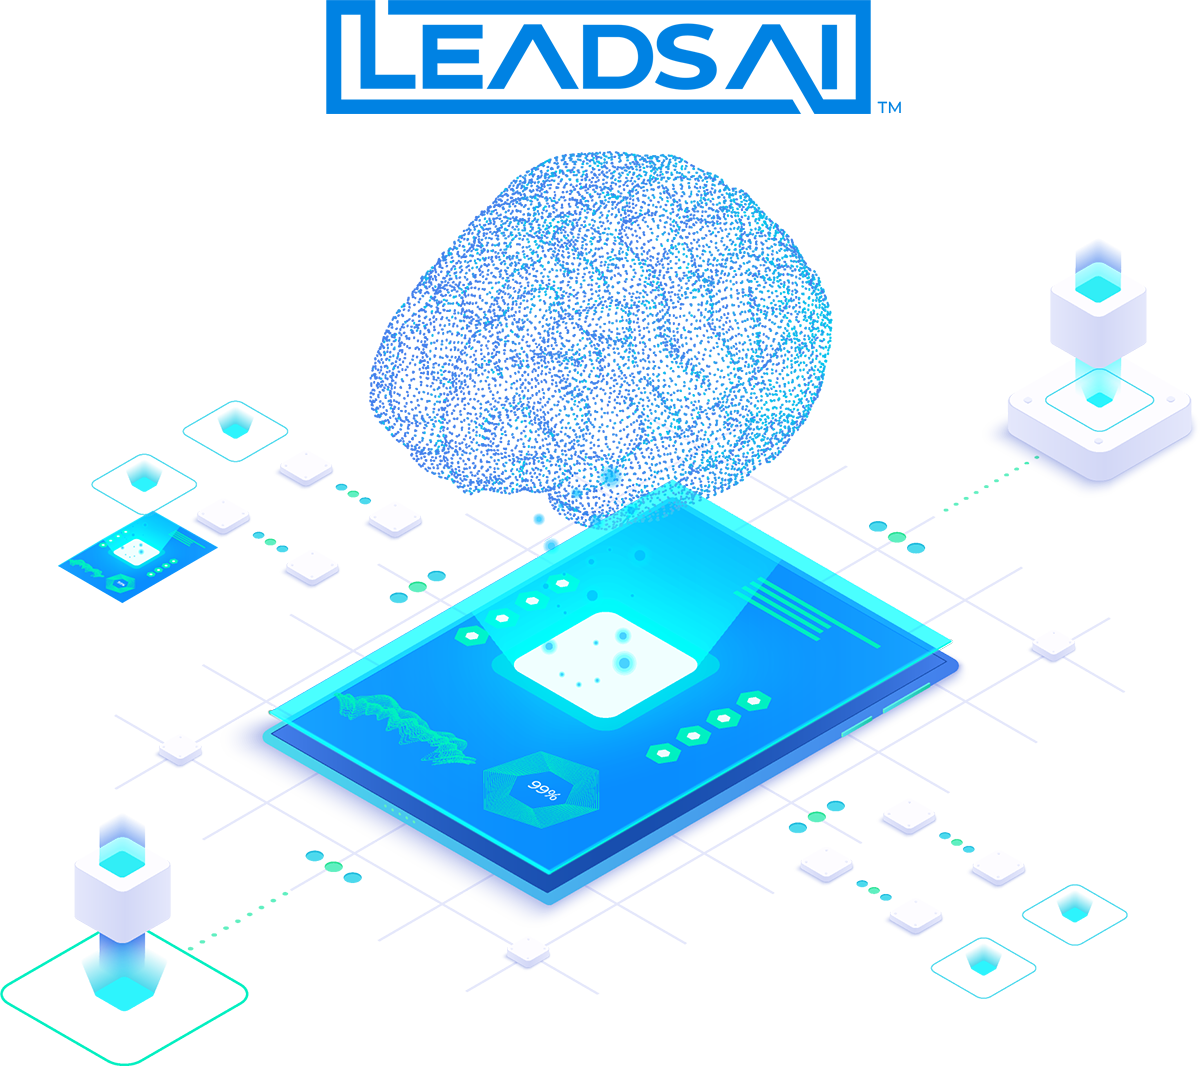 LeadsAI